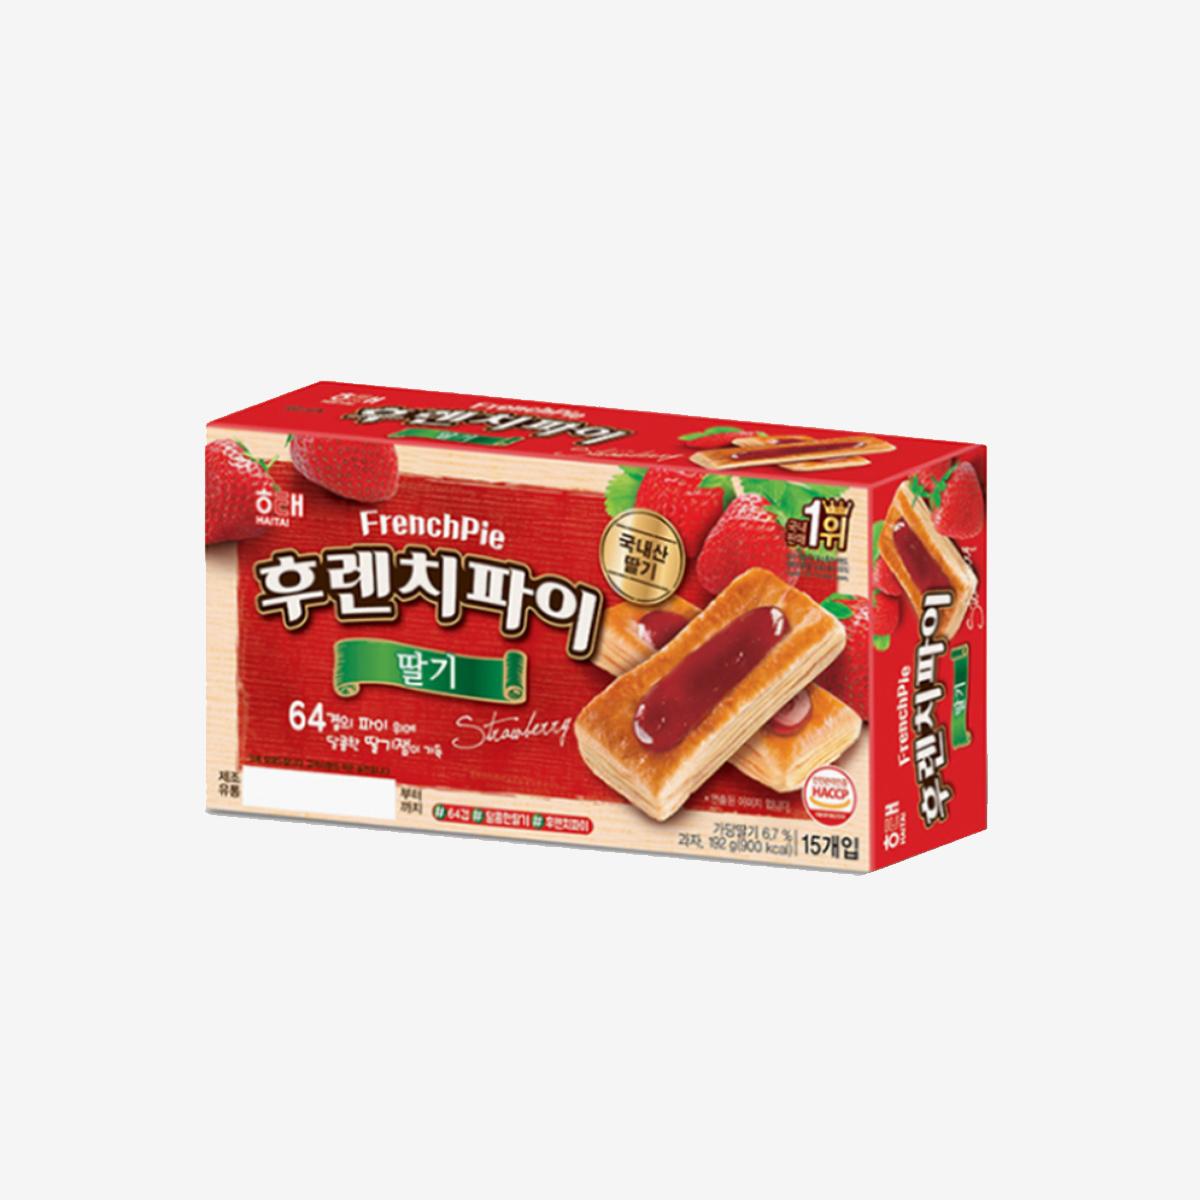 korean brand haitai's strawberry flavored french pie box